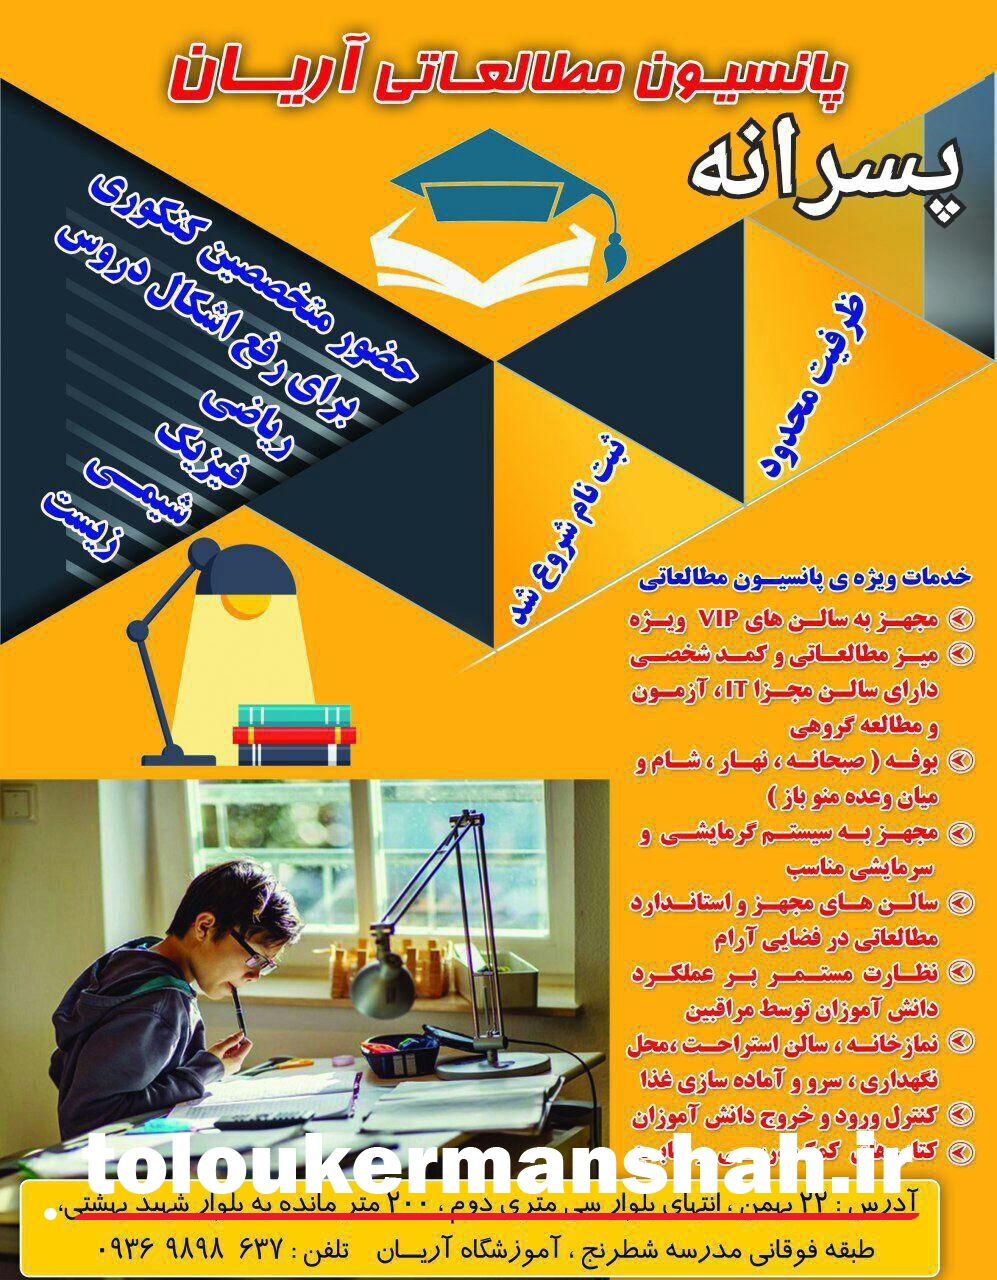 فضایی متفاوت در نخستین پانسیون مطالعاتی پسرانه در کرمانشاه